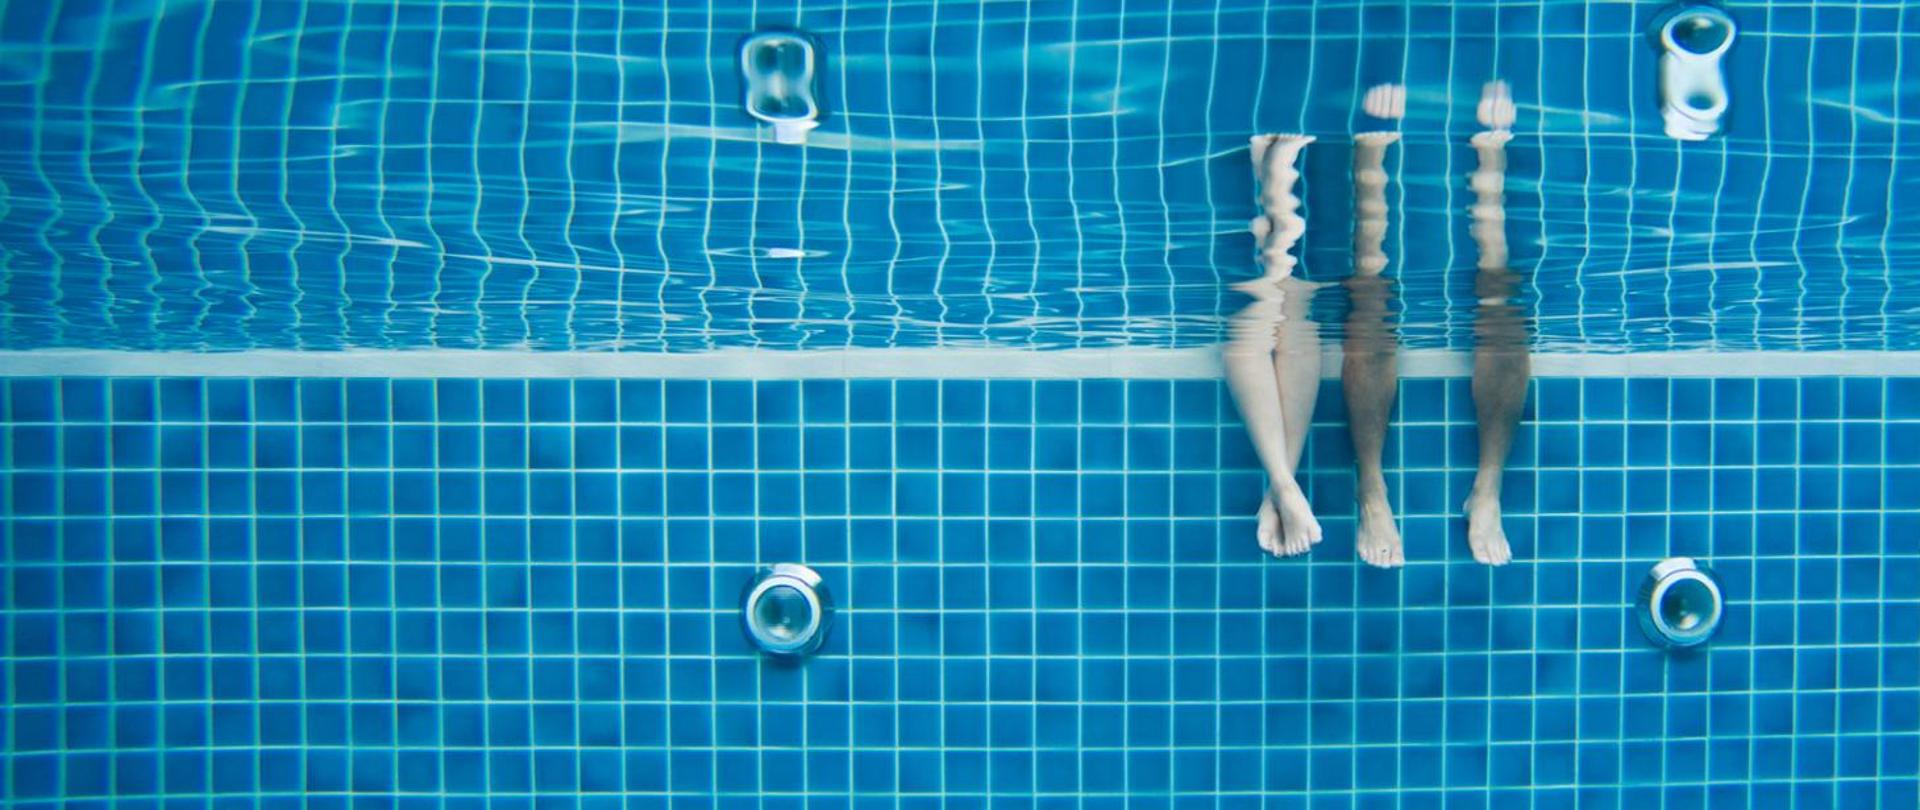 Zdjęcie zrobione na basenie pod taflą wody, na brzegu basenu siedzą dwie osoby.